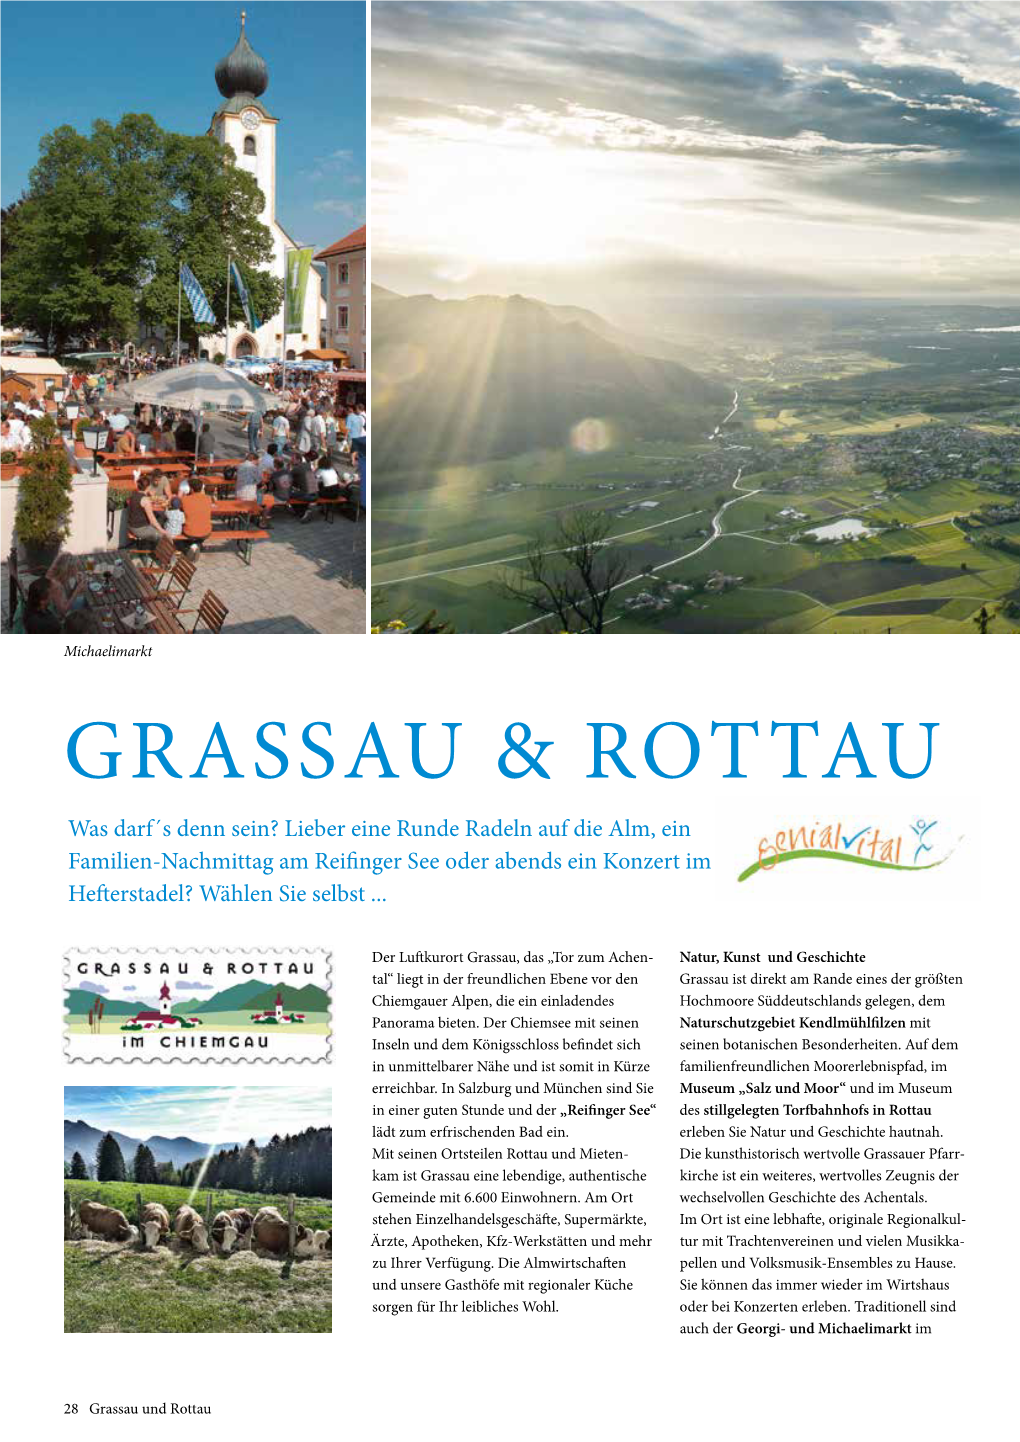 Grassau & Rottau